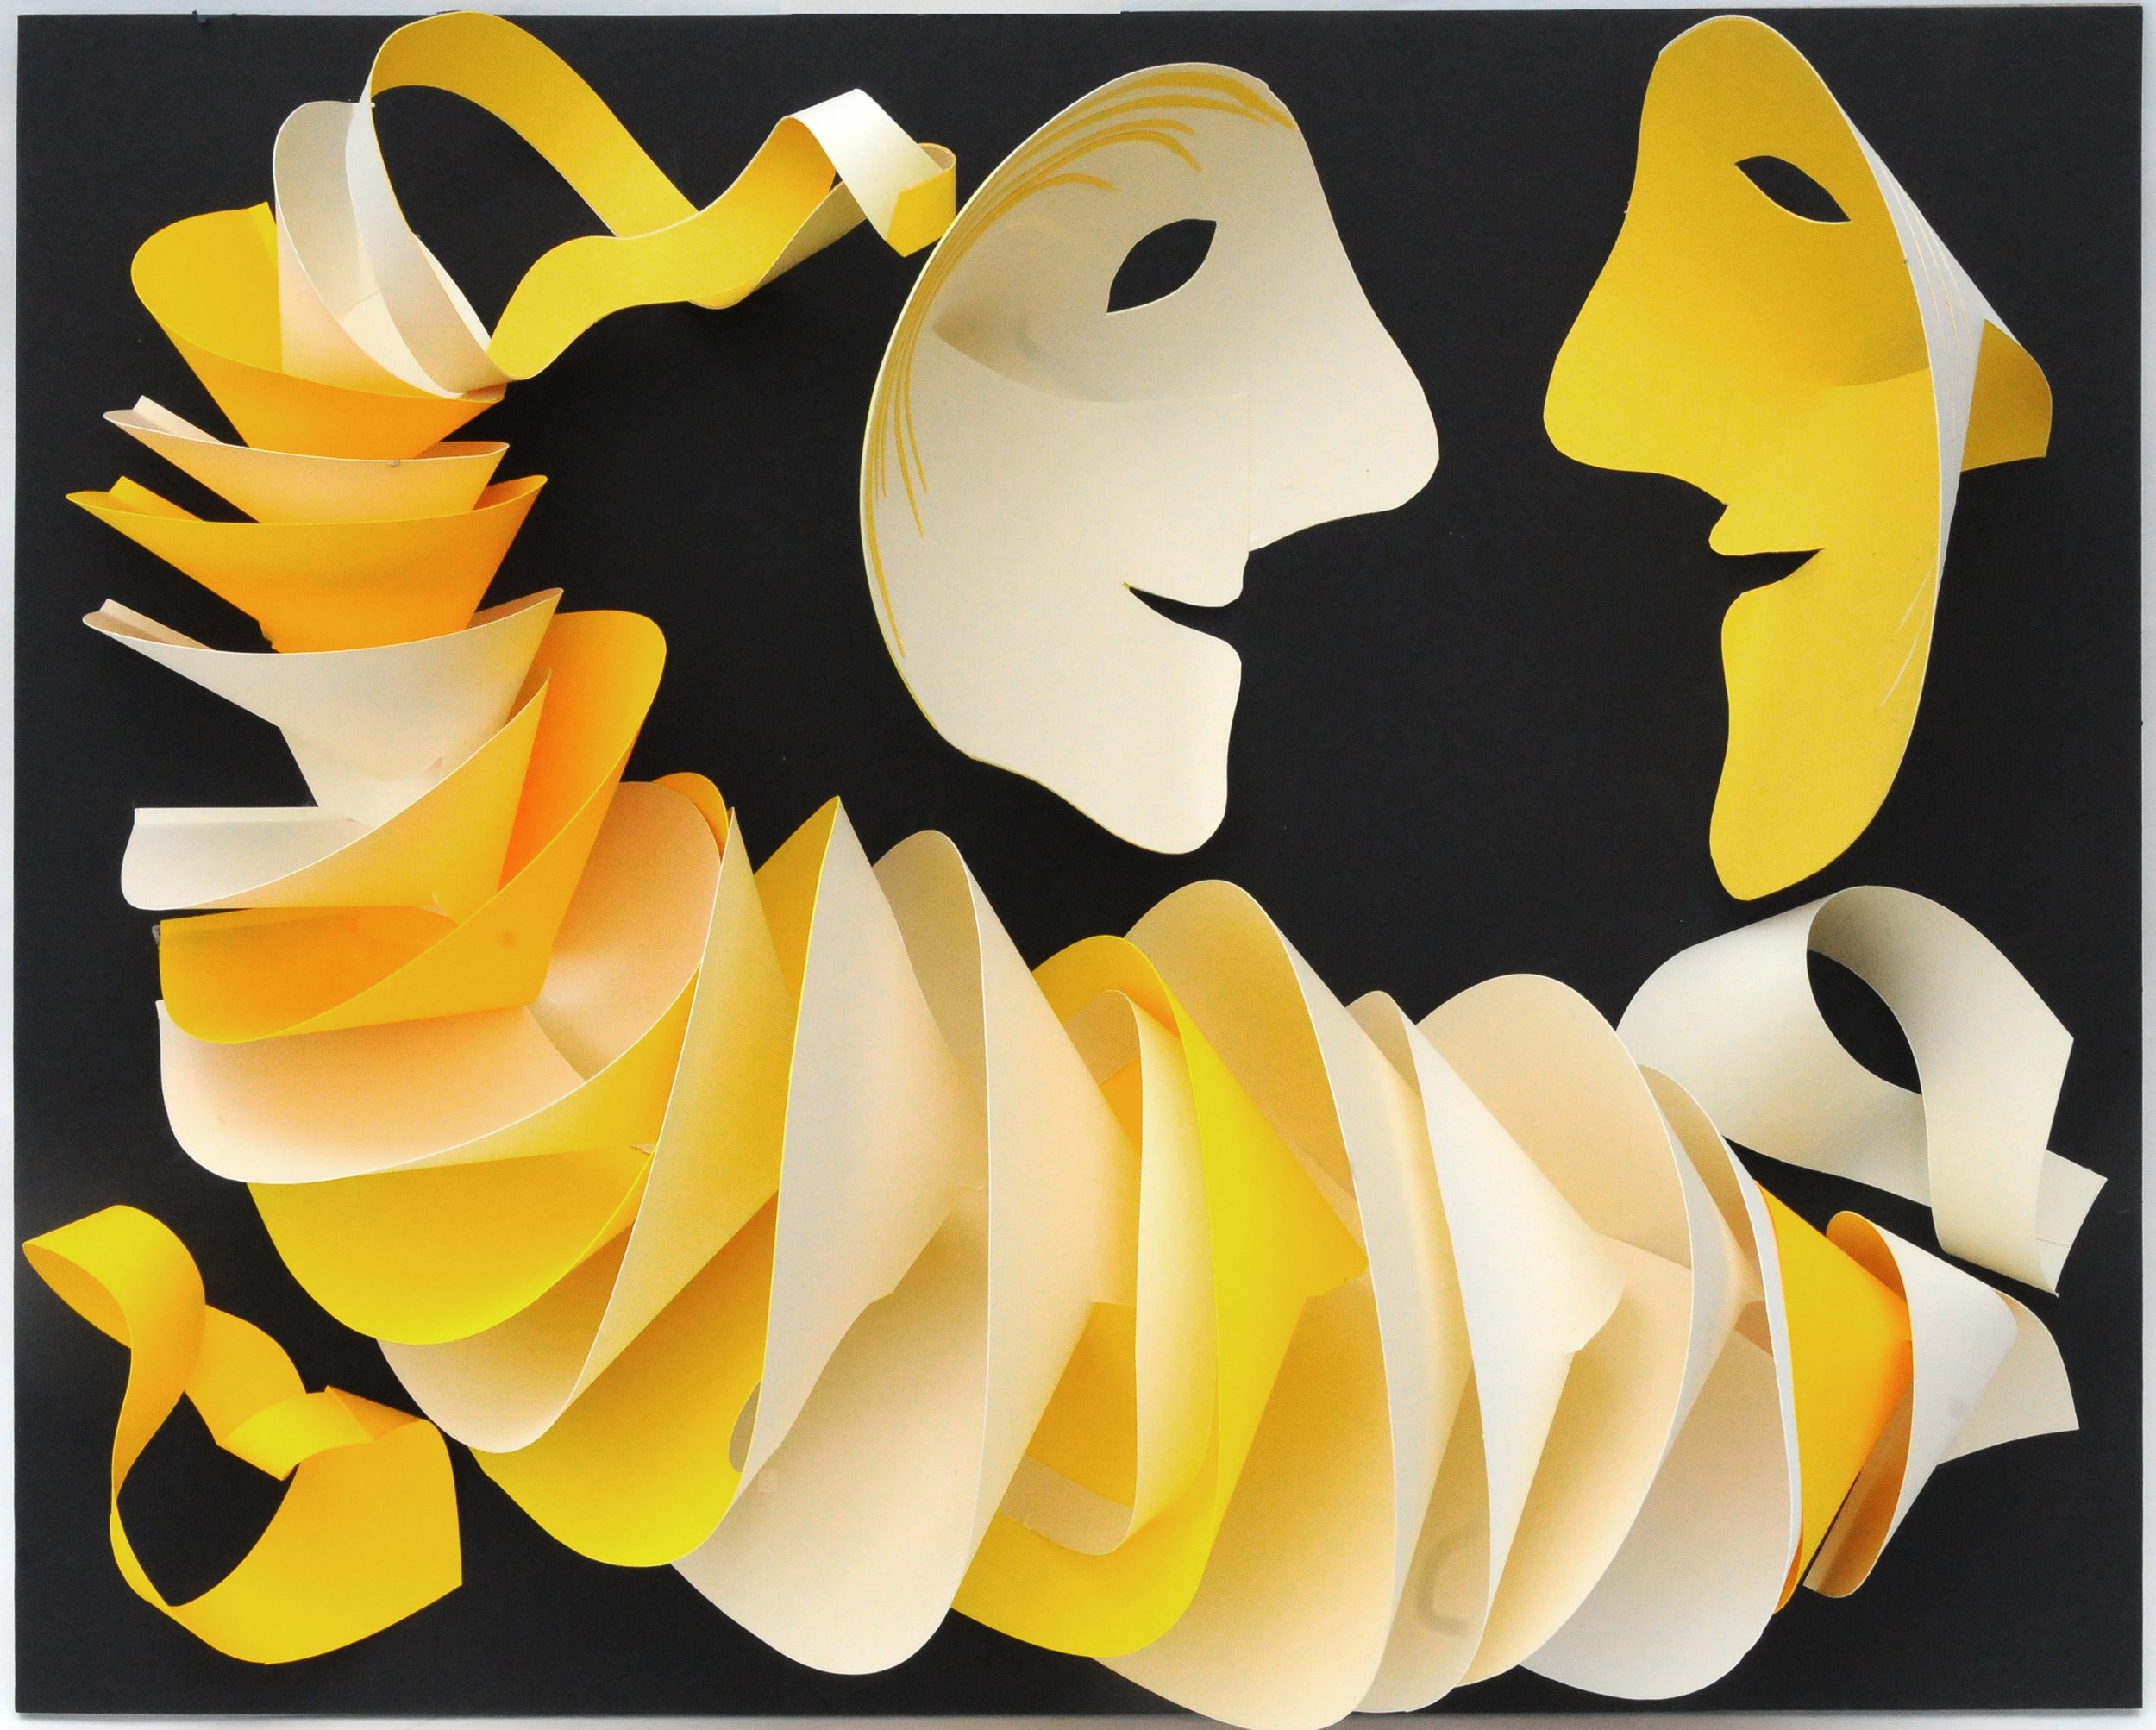 Jeremy Haslam - The Conversation - paper sculpture